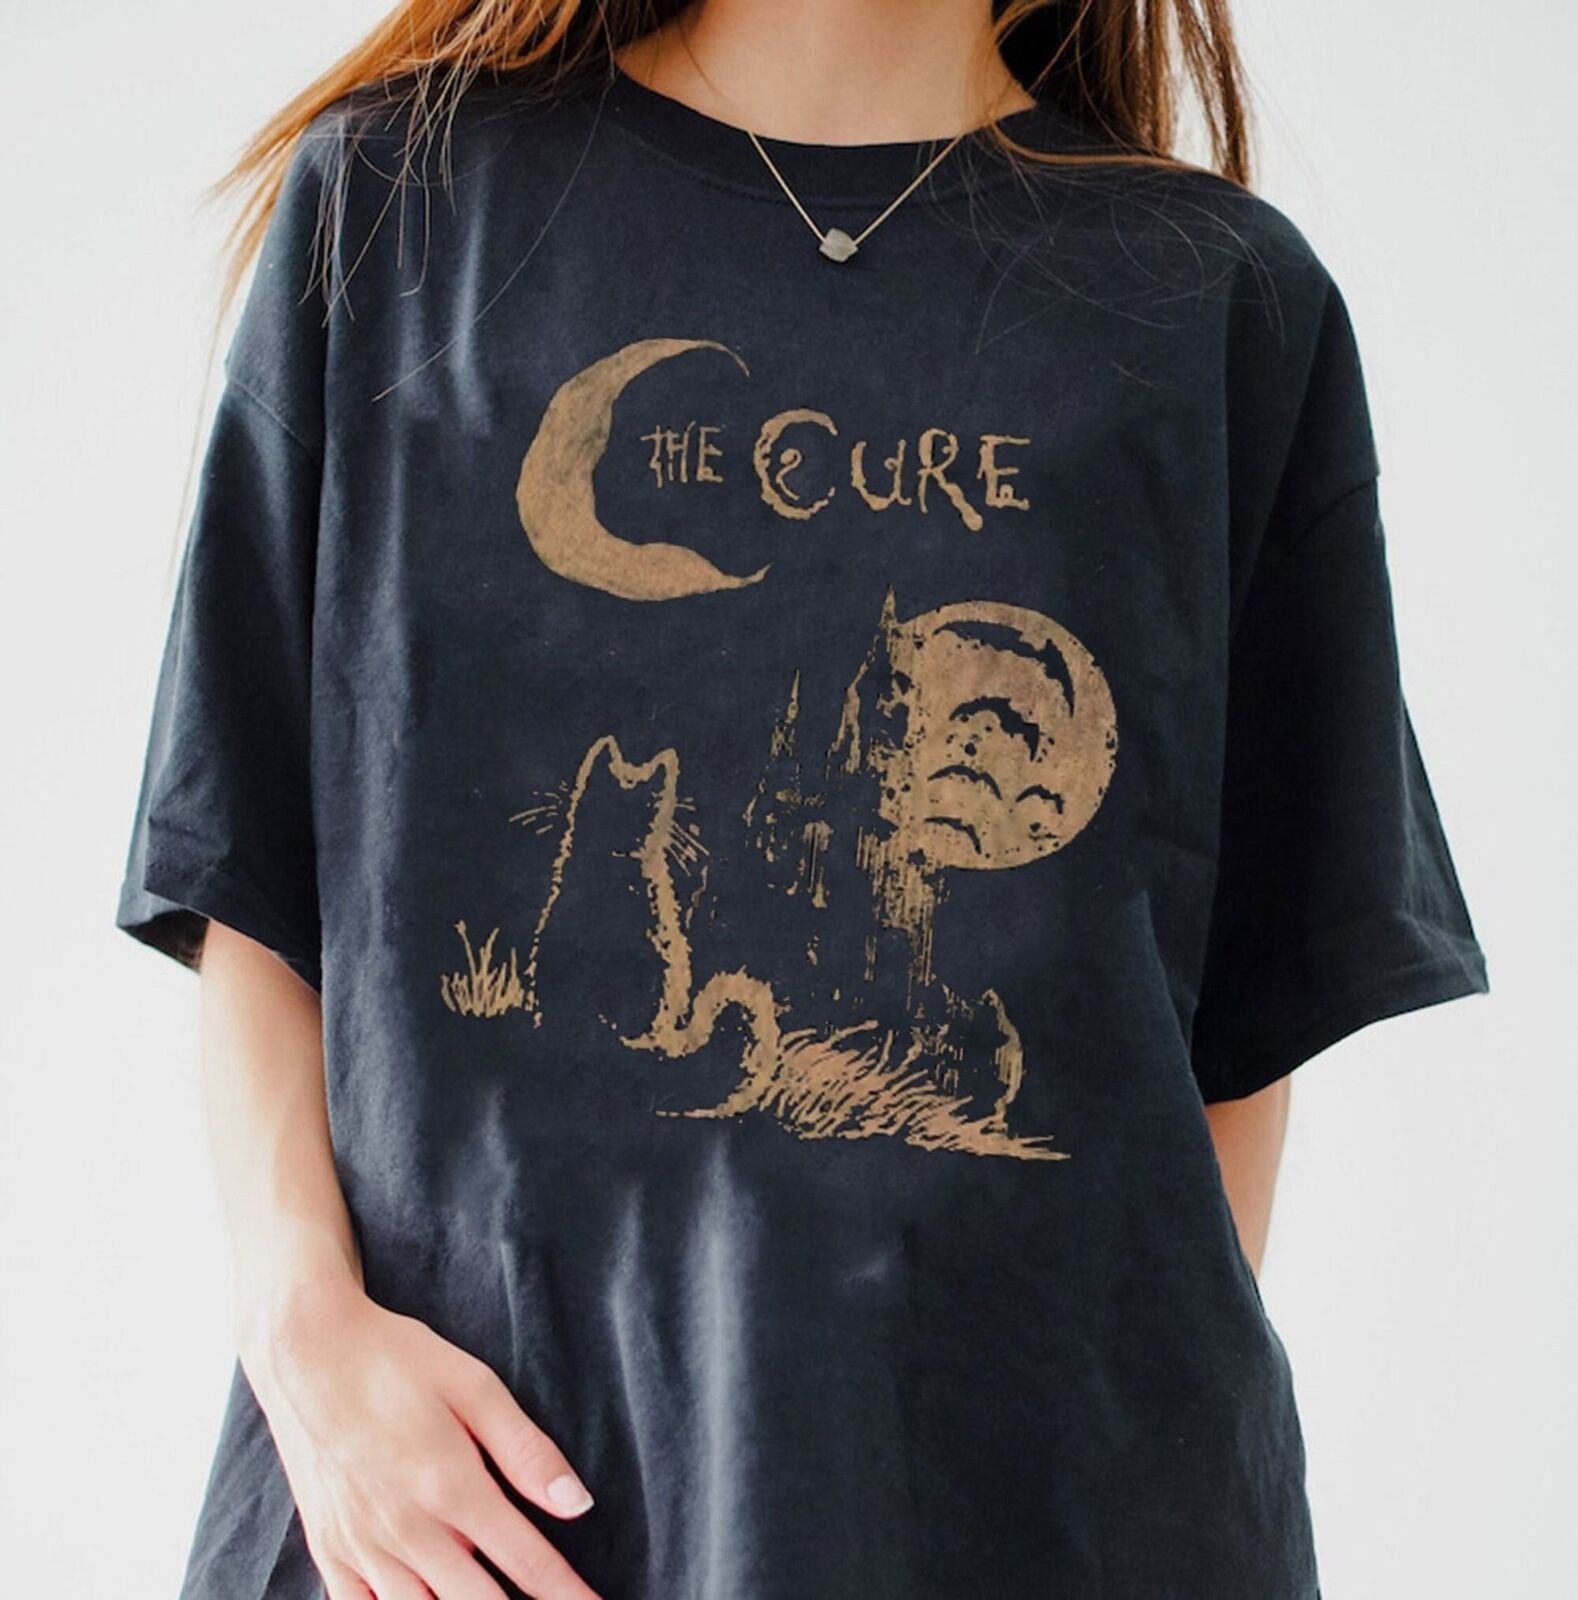 The Cure Poster Cotton Black Unisex T-shirt S-5XL Men Women VN2436